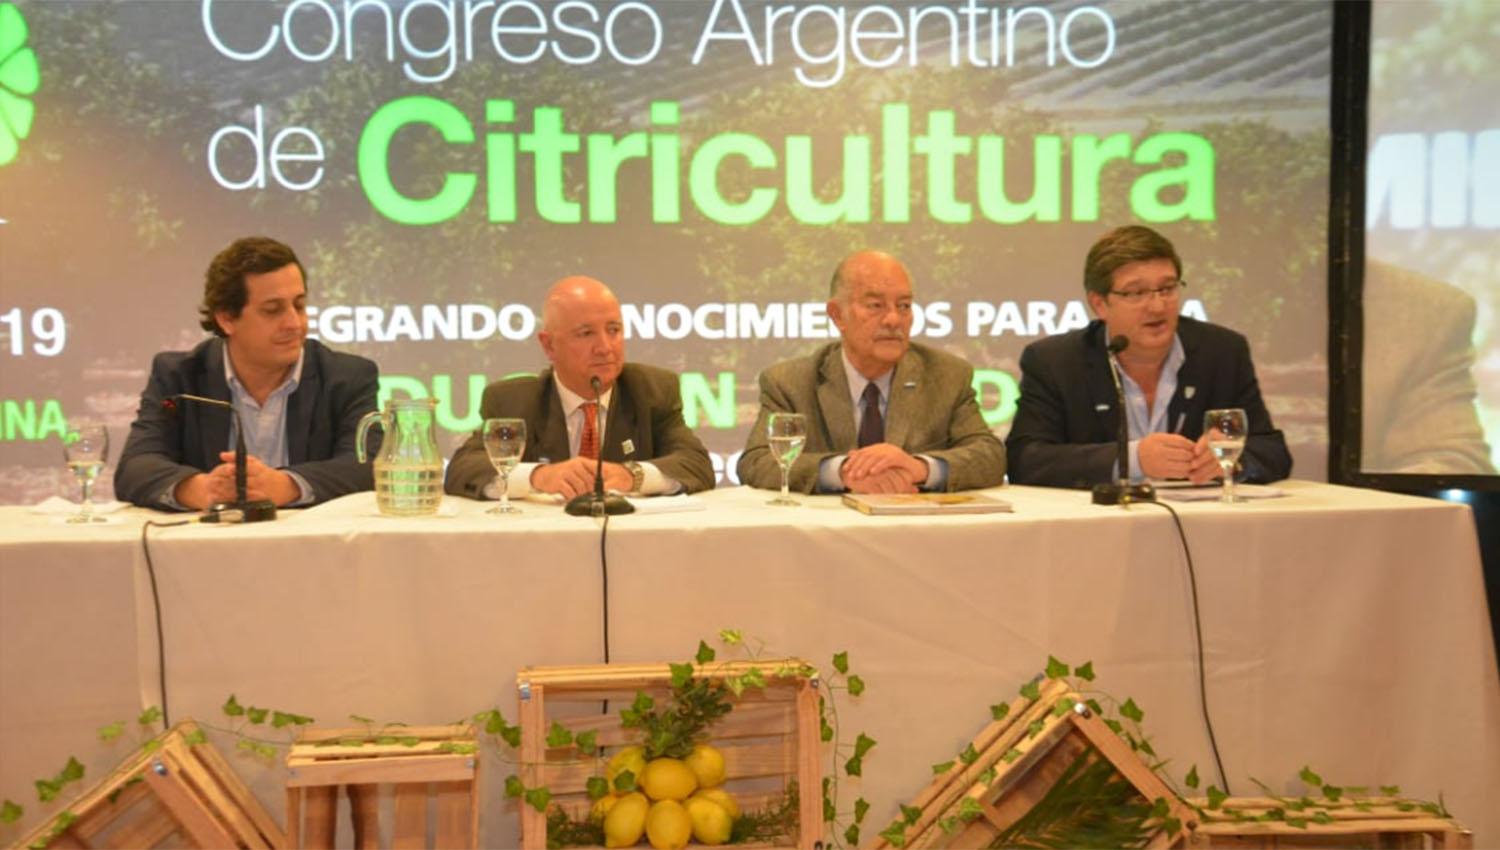 ACTO DE APERTURA. De izquierda a derecha de la imagen, Pablo Padilla (Acnoa), Hernán Salas (presidente del congreso), Juan Luis Fernández (ministro de la Producción), y Guillermo Rossi (Senasa).